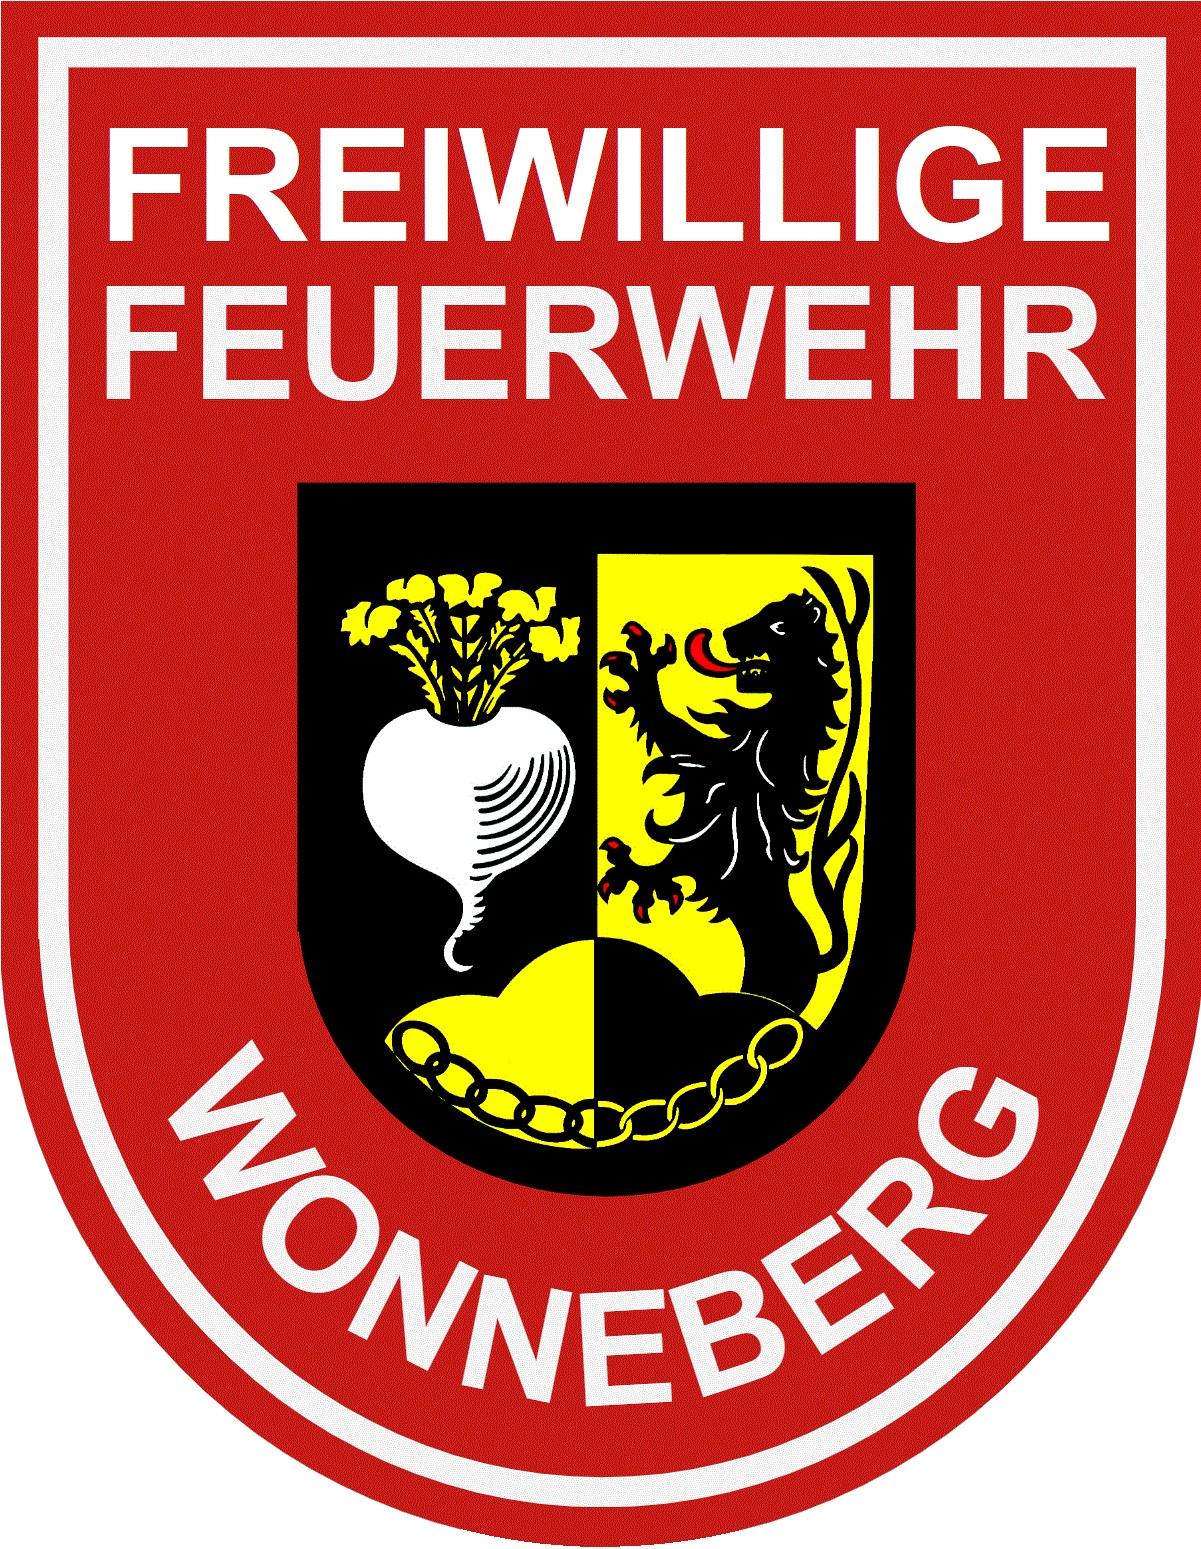 Freiwillige Feuerwehr Wonneberg e.V.